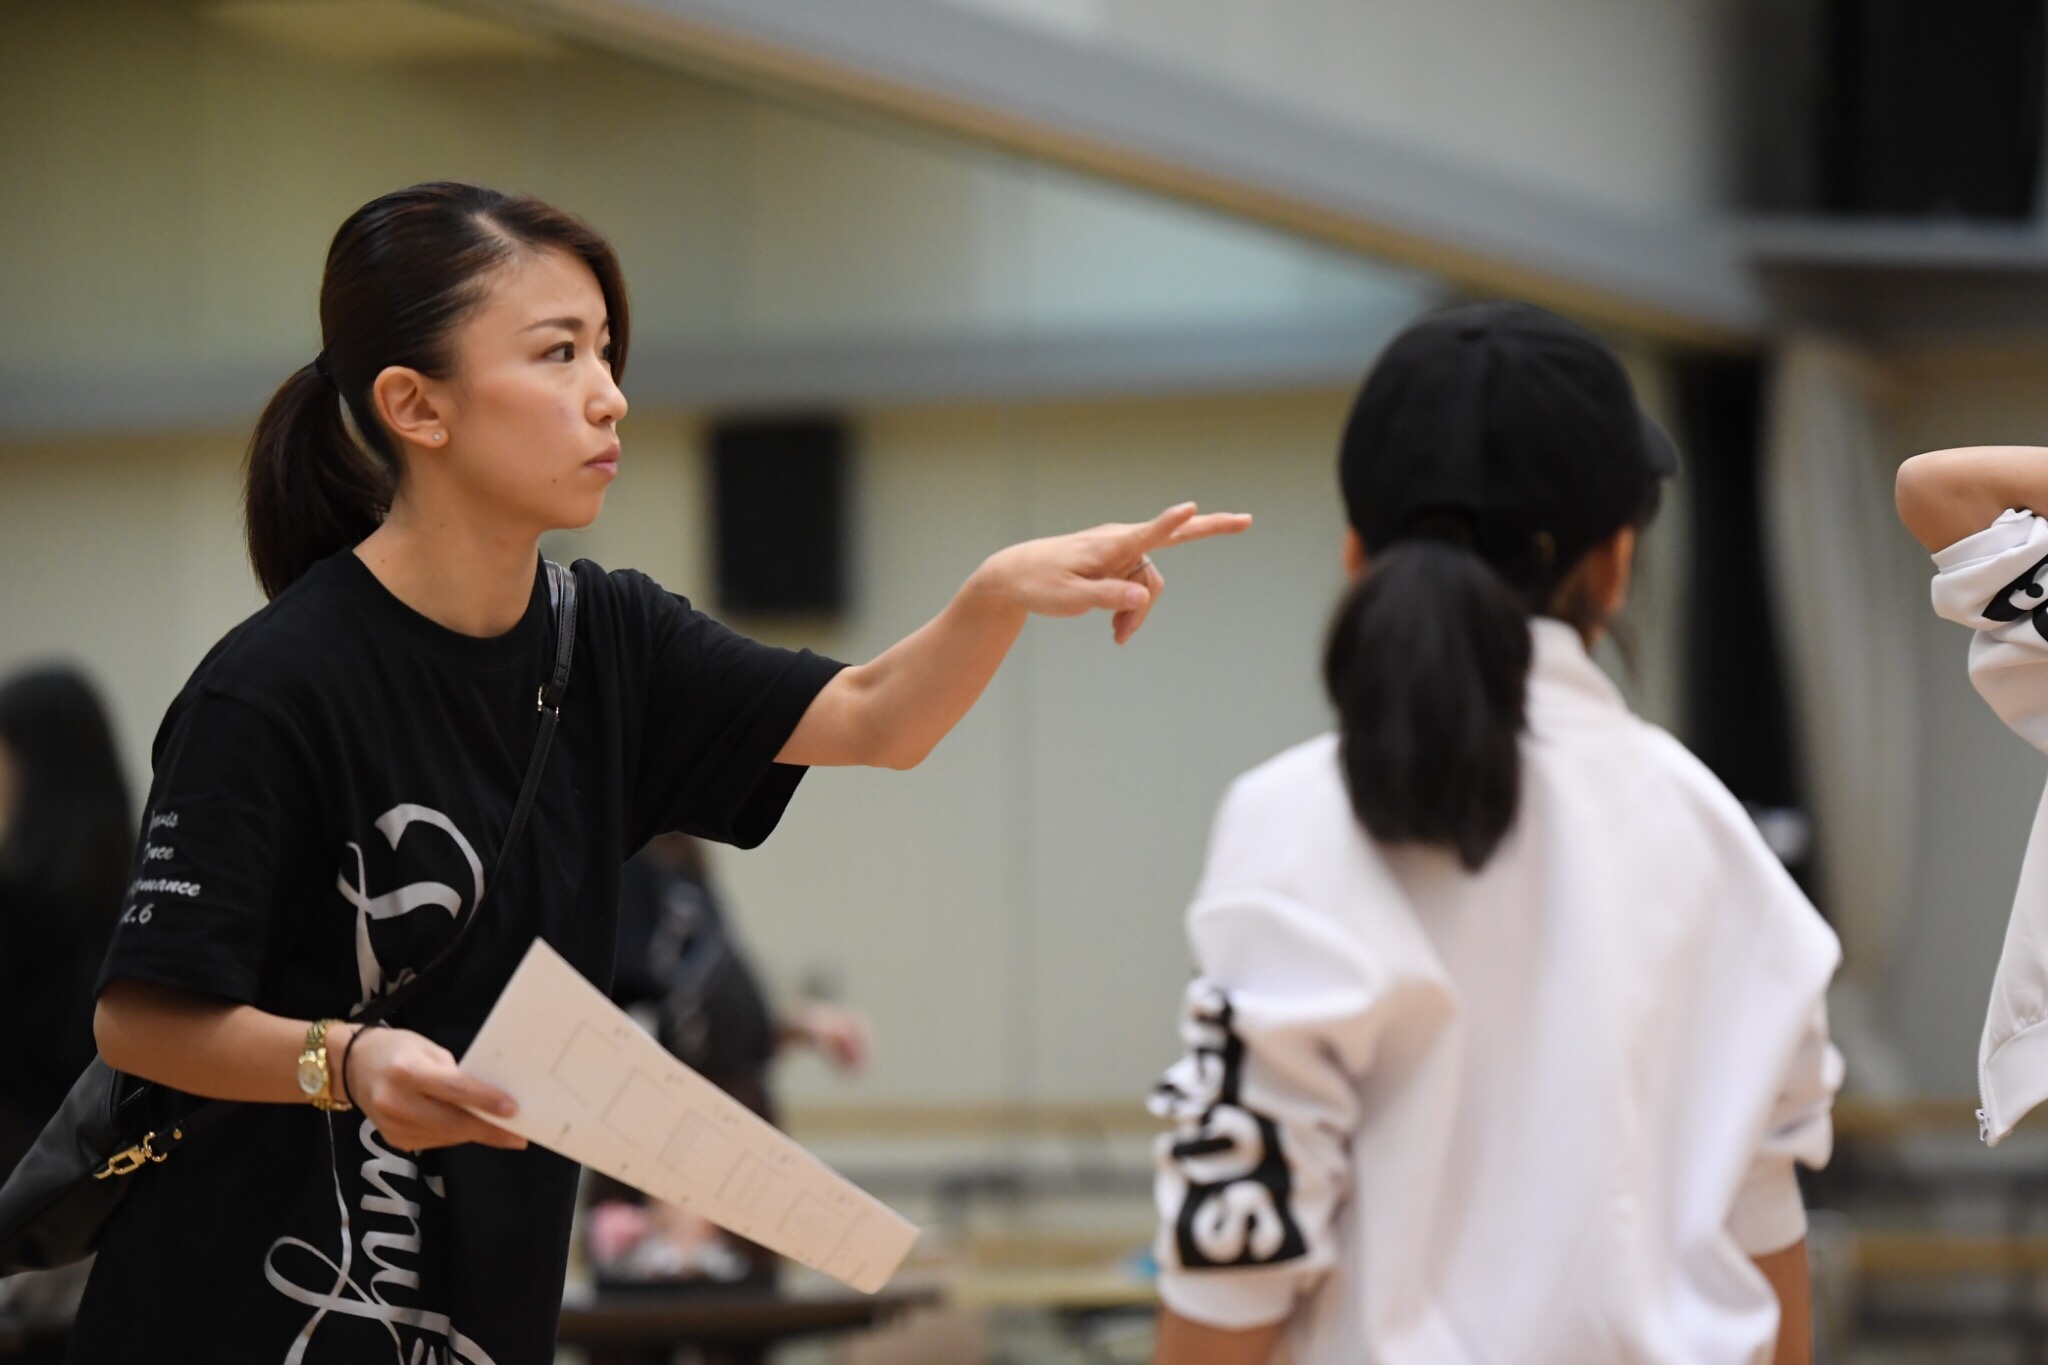 チアダンスの振り付け 振りづくり のやり方を大公開 Gravis 神奈川 東京で人気のチア キッズチアダンススクール